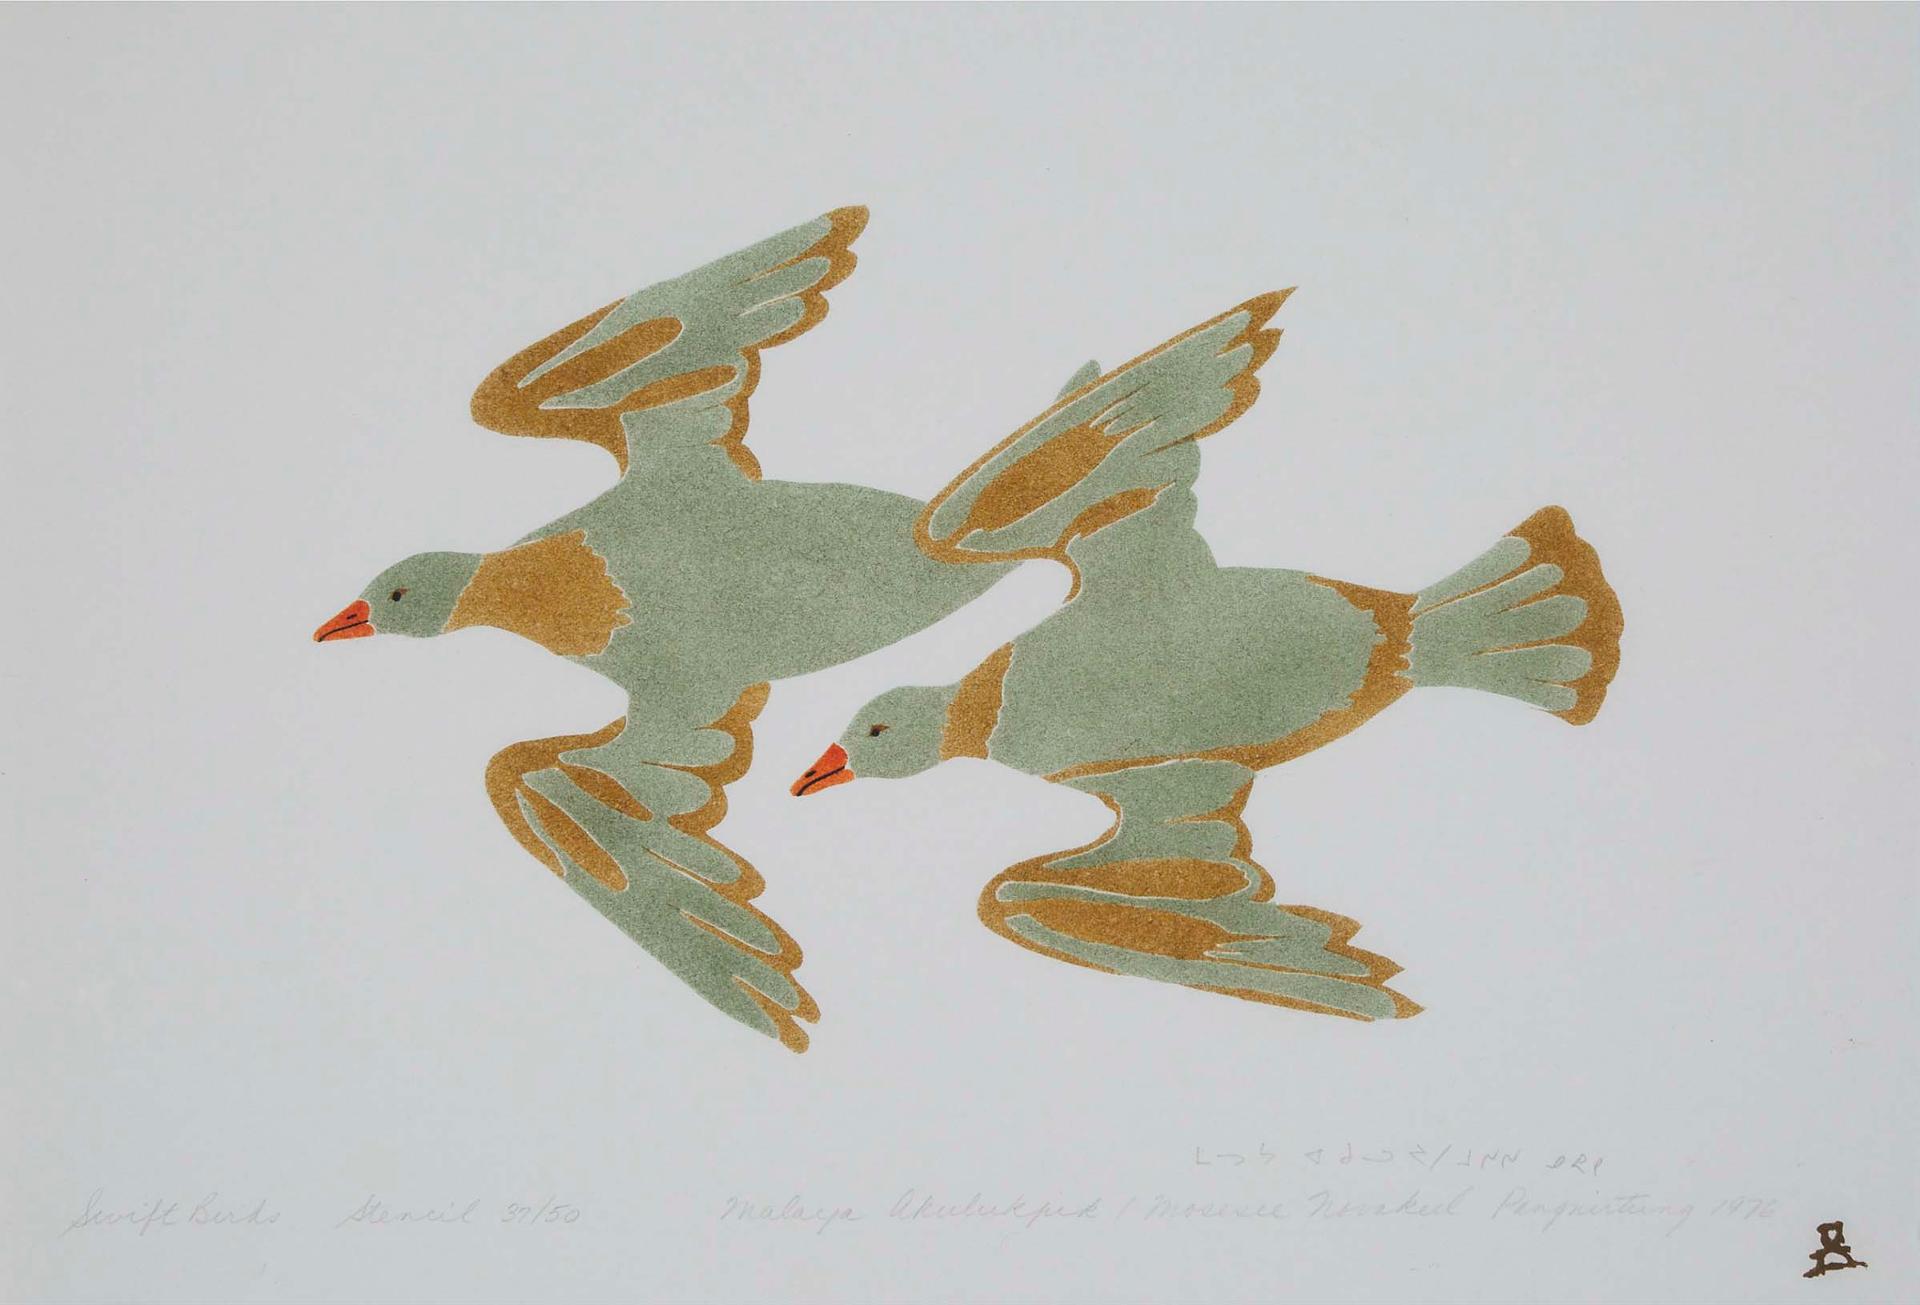 Malaya Akulukjuk (1915-1995) - Swift Bird